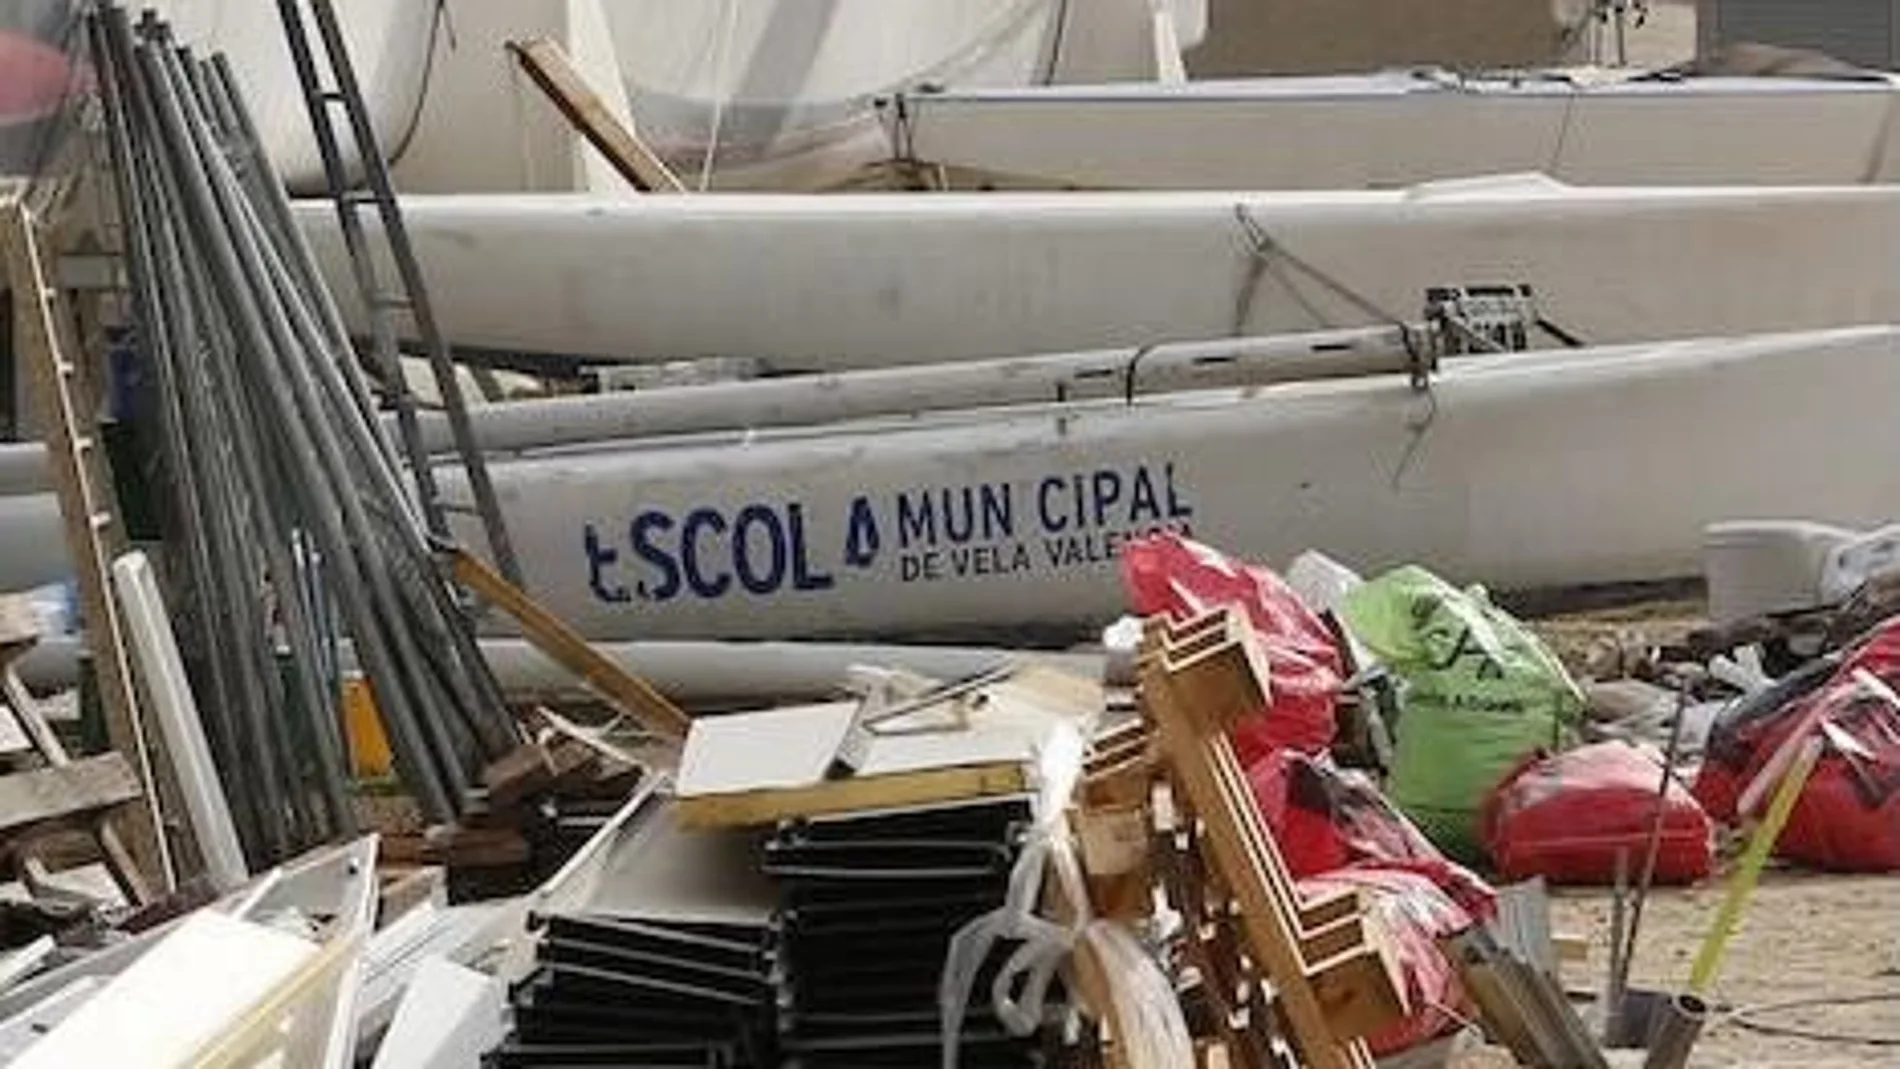 El catamarán de Alinghi está abandonado junto a otros enseres en dique seco en la Marina